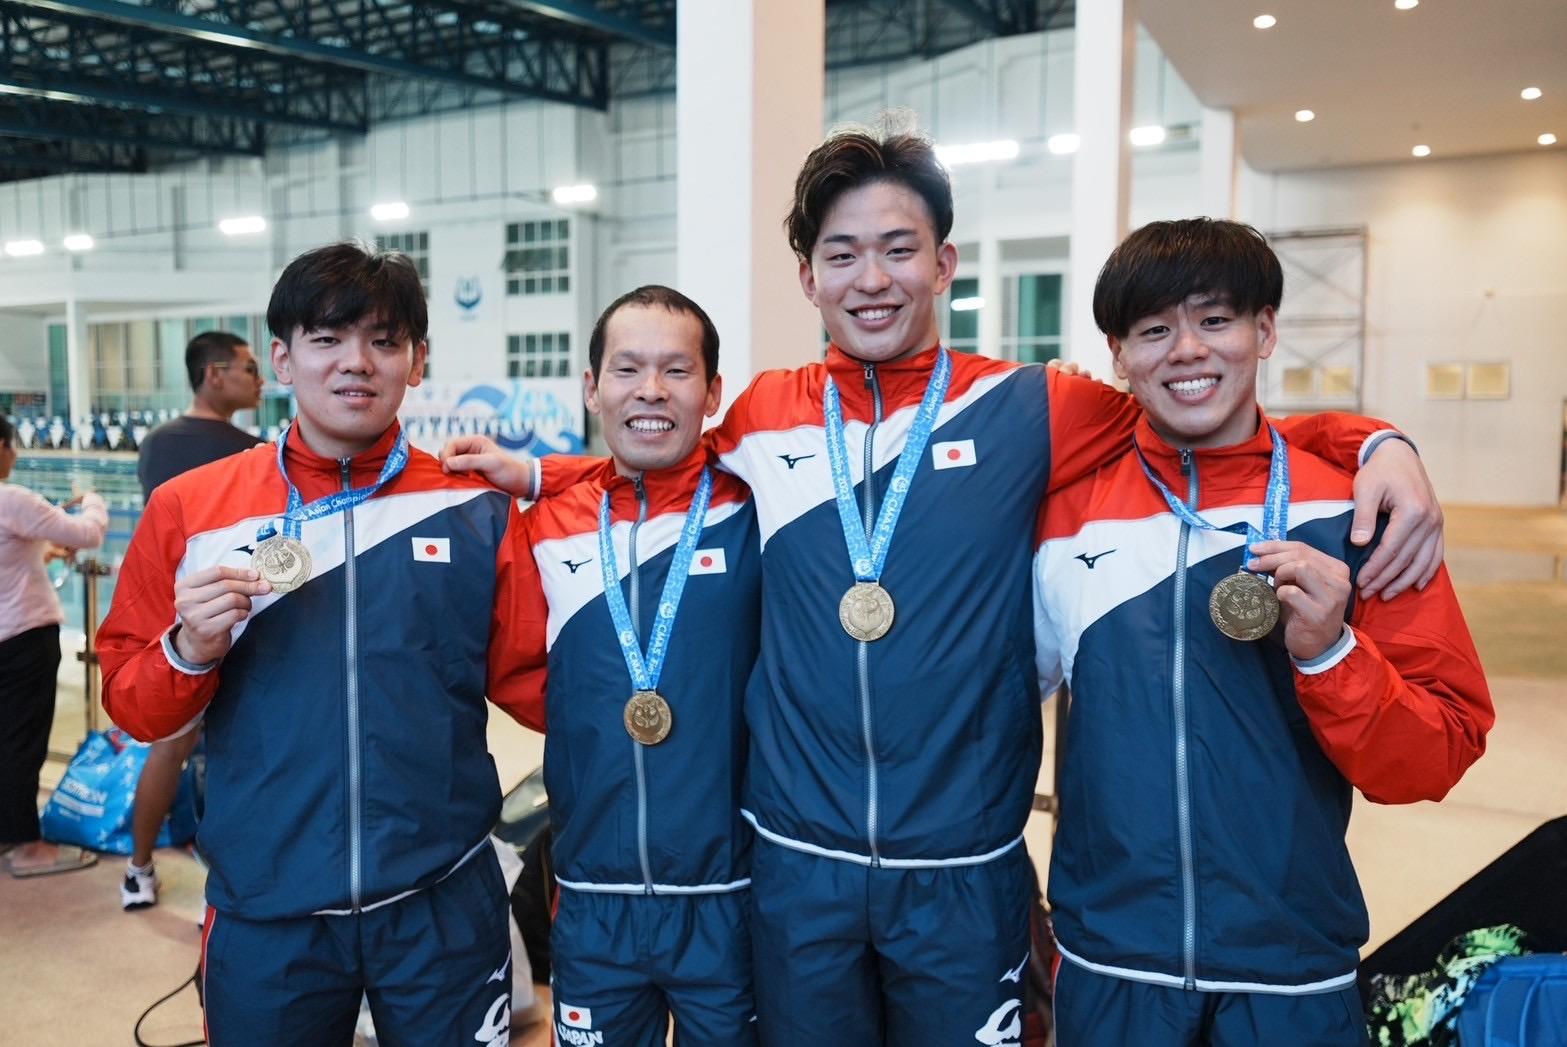 大阪国際大学の谷川哲朗准教授がフィンスイミングアジア選手権大会に出場し、リレー種目で銅メダルを獲得しました